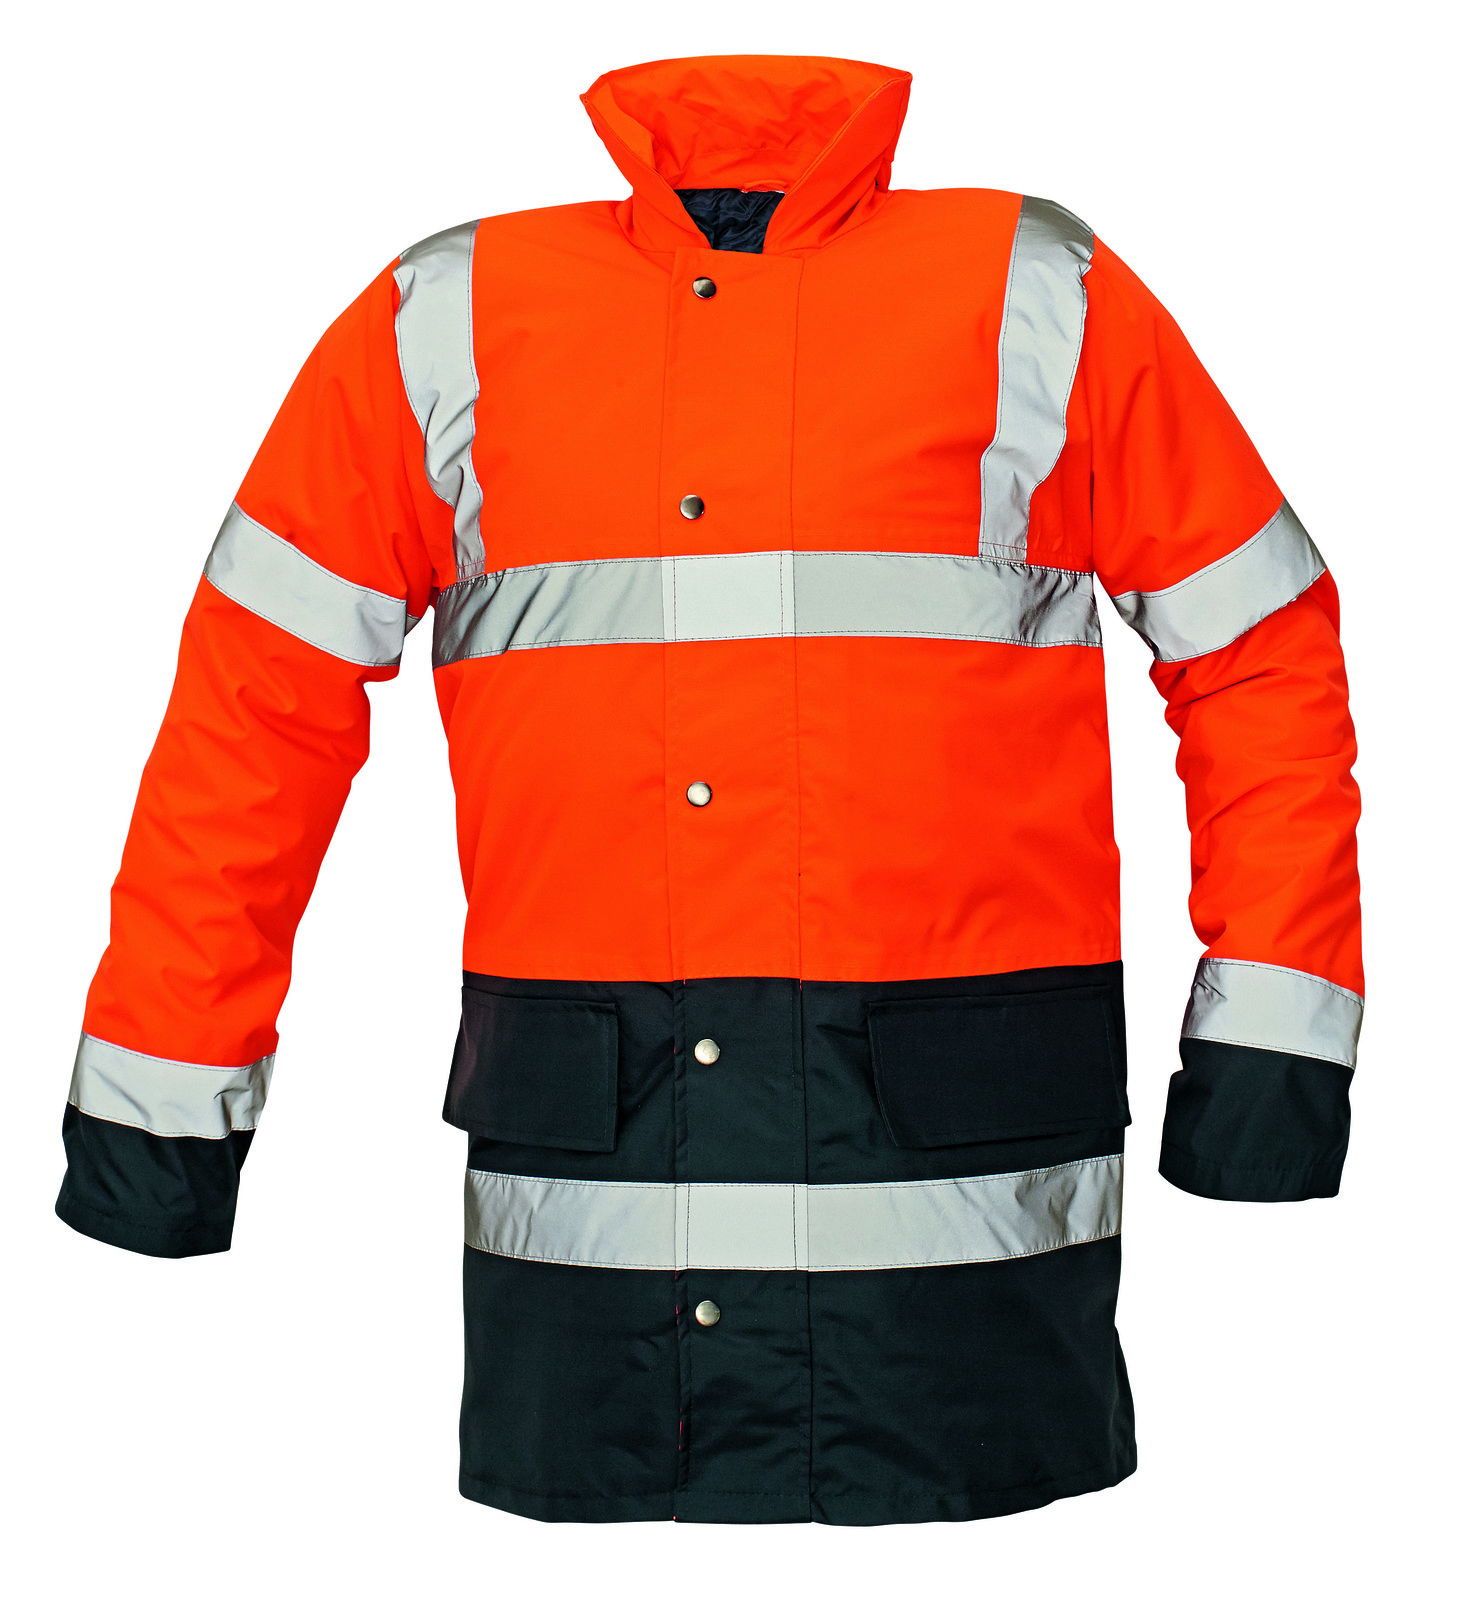 Ľahká zateplená reflexná bunda Sefton - veľkosť: M, farba: oranžová/navy